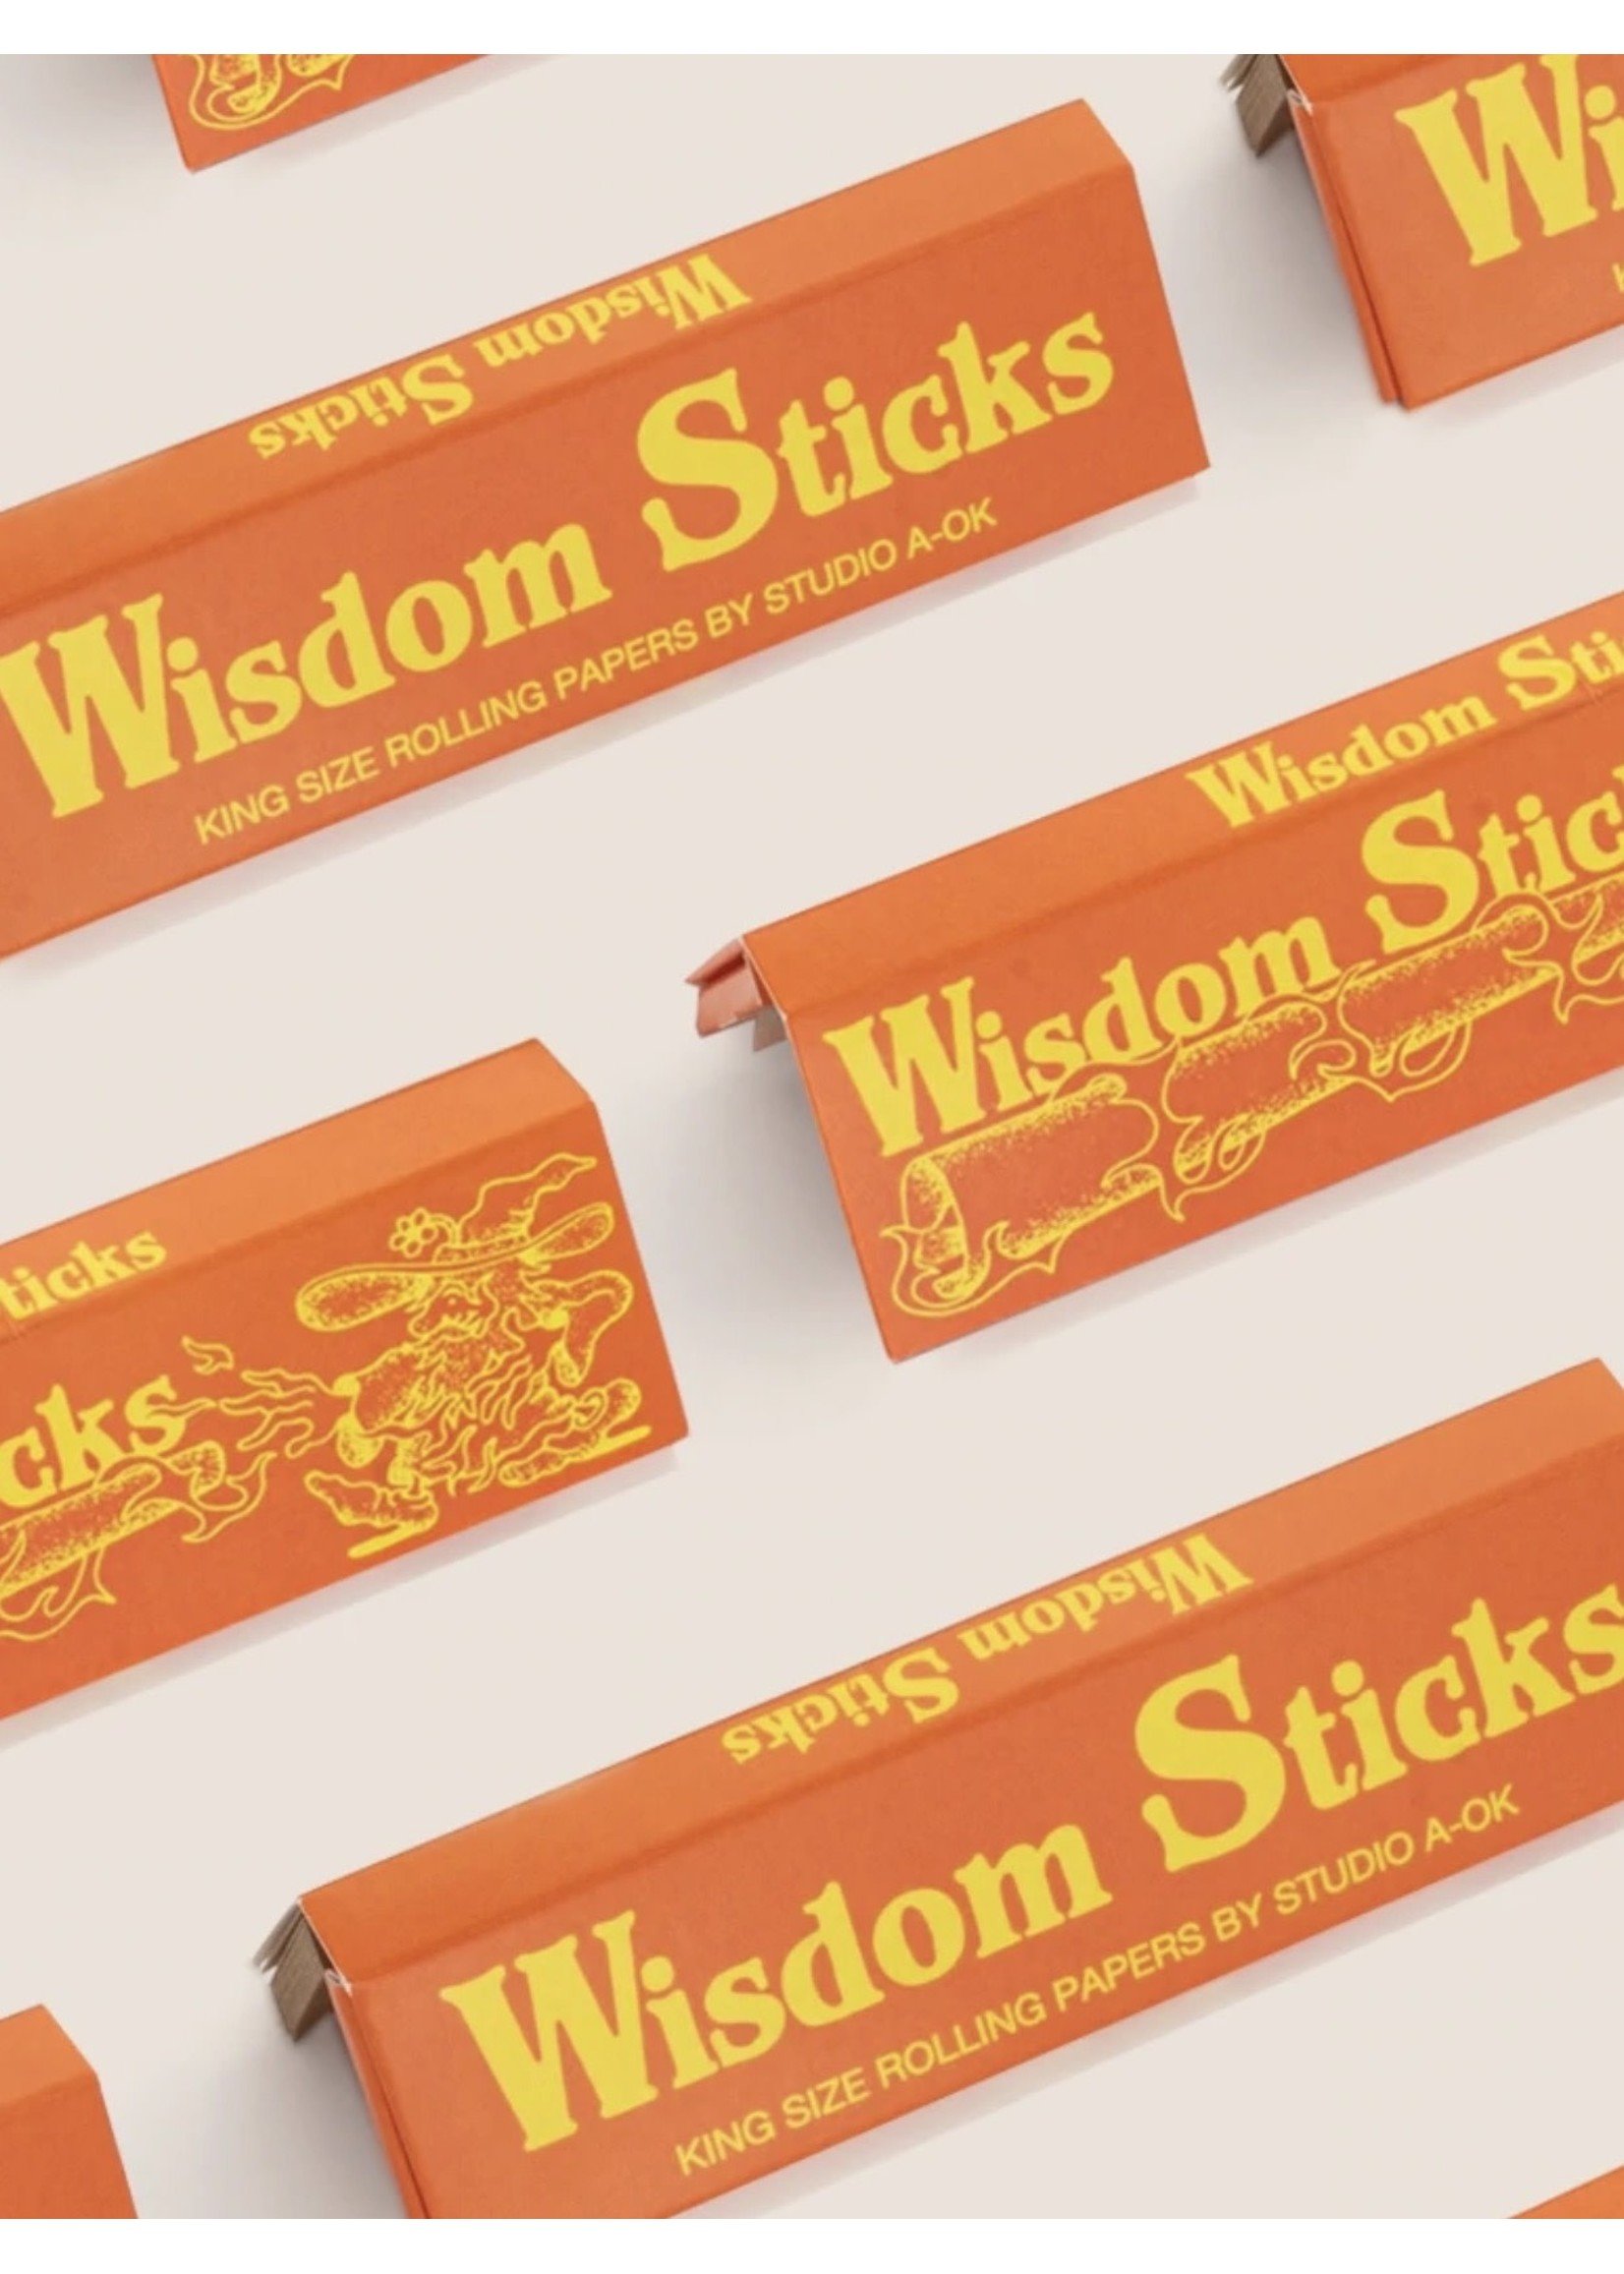 Studio A-OK "Wisdom Sticks" King Size Rolling Papers by Studio A-OK